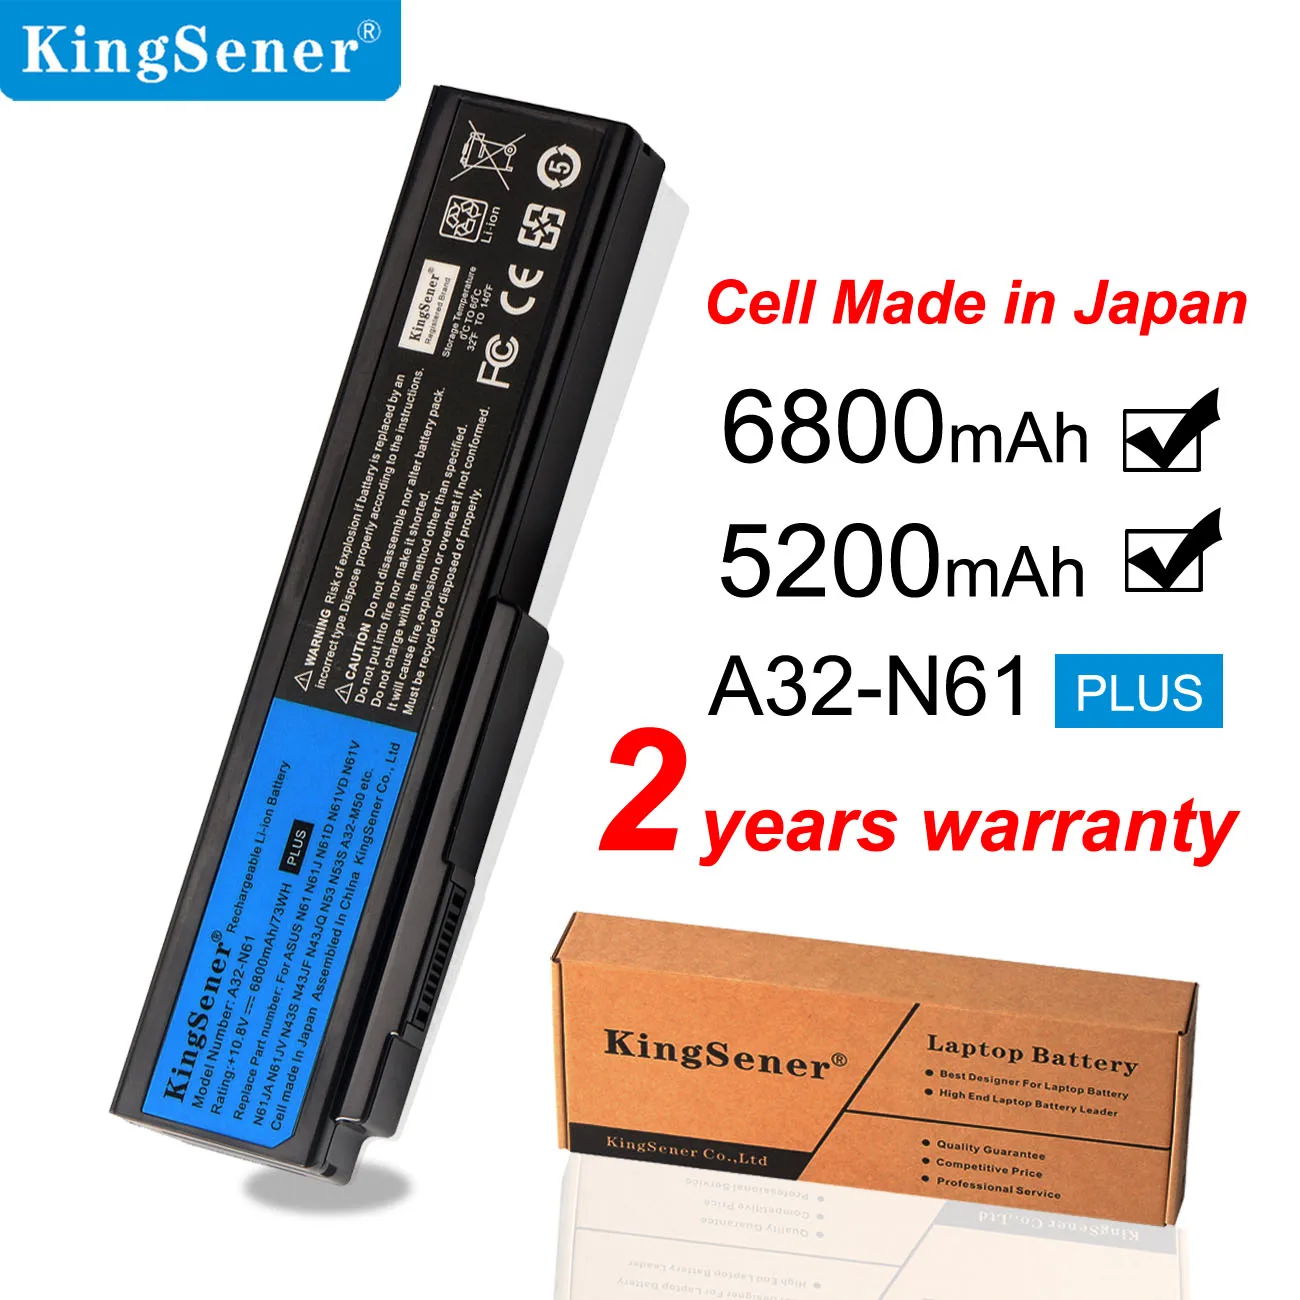 KingSener A32-N61 Laptop Battery for ASUS N61 N61J N61D N61V N61VG N61JA N61JV M50s N43S N43JF N43JQ N53 N53S N53SV A32-M50